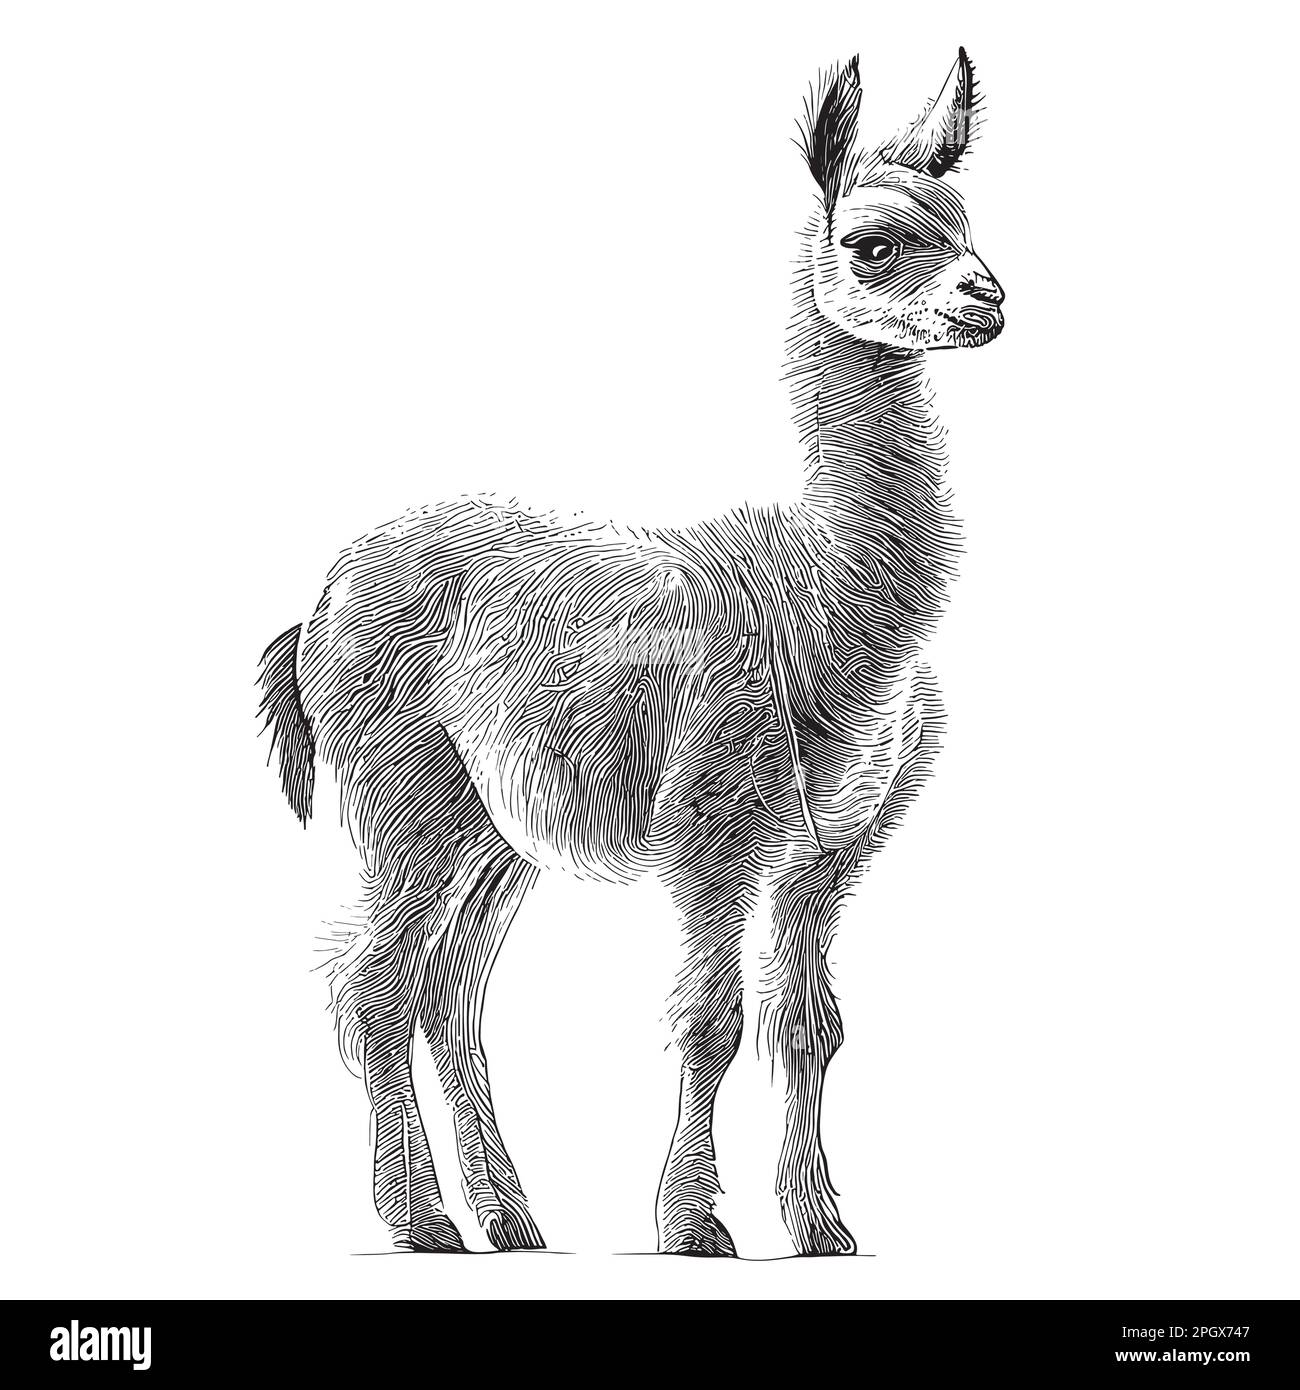 Lama steht und skizziert von Hand gezeichnet in Doodle-Style-Illustration Stock Vektor